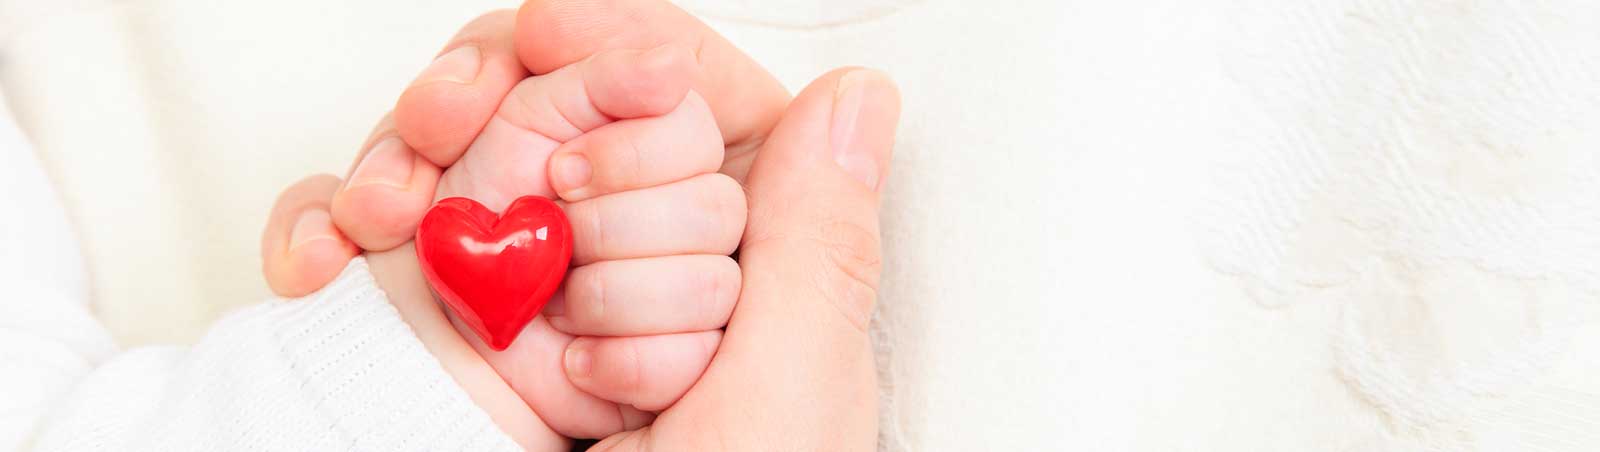 Servicio de obstetricia para ayudarte con tu bebe